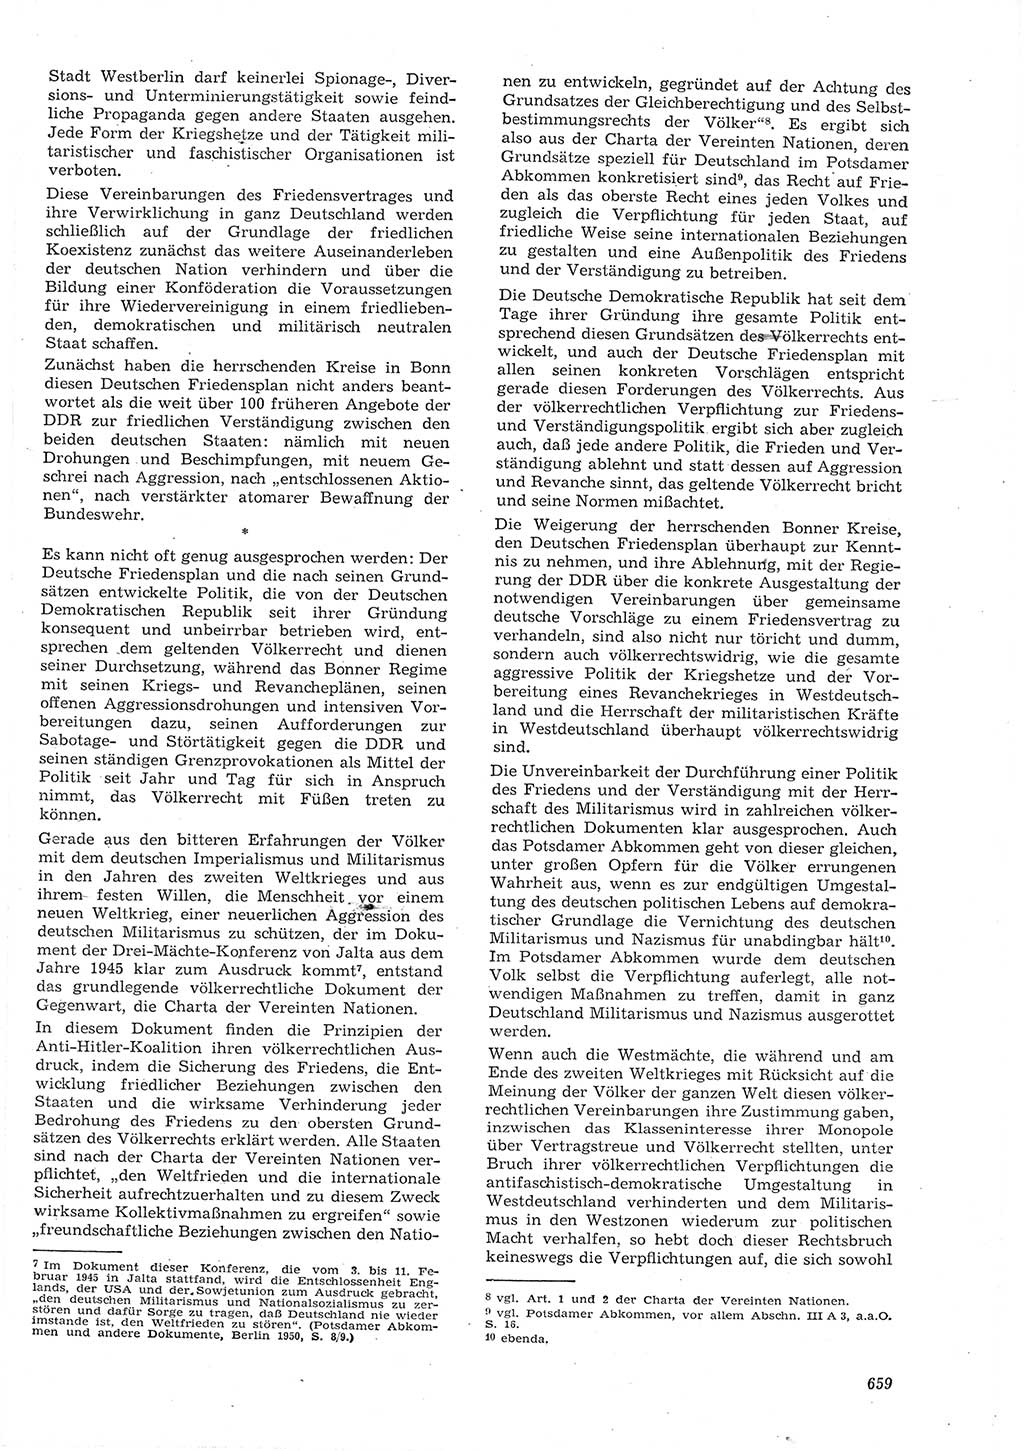 Neue Justiz (NJ), Zeitschrift für Recht und Rechtswissenschaft [Deutsche Demokratische Republik (DDR)], 15. Jahrgang 1961, Seite 659 (NJ DDR 1961, S. 659)